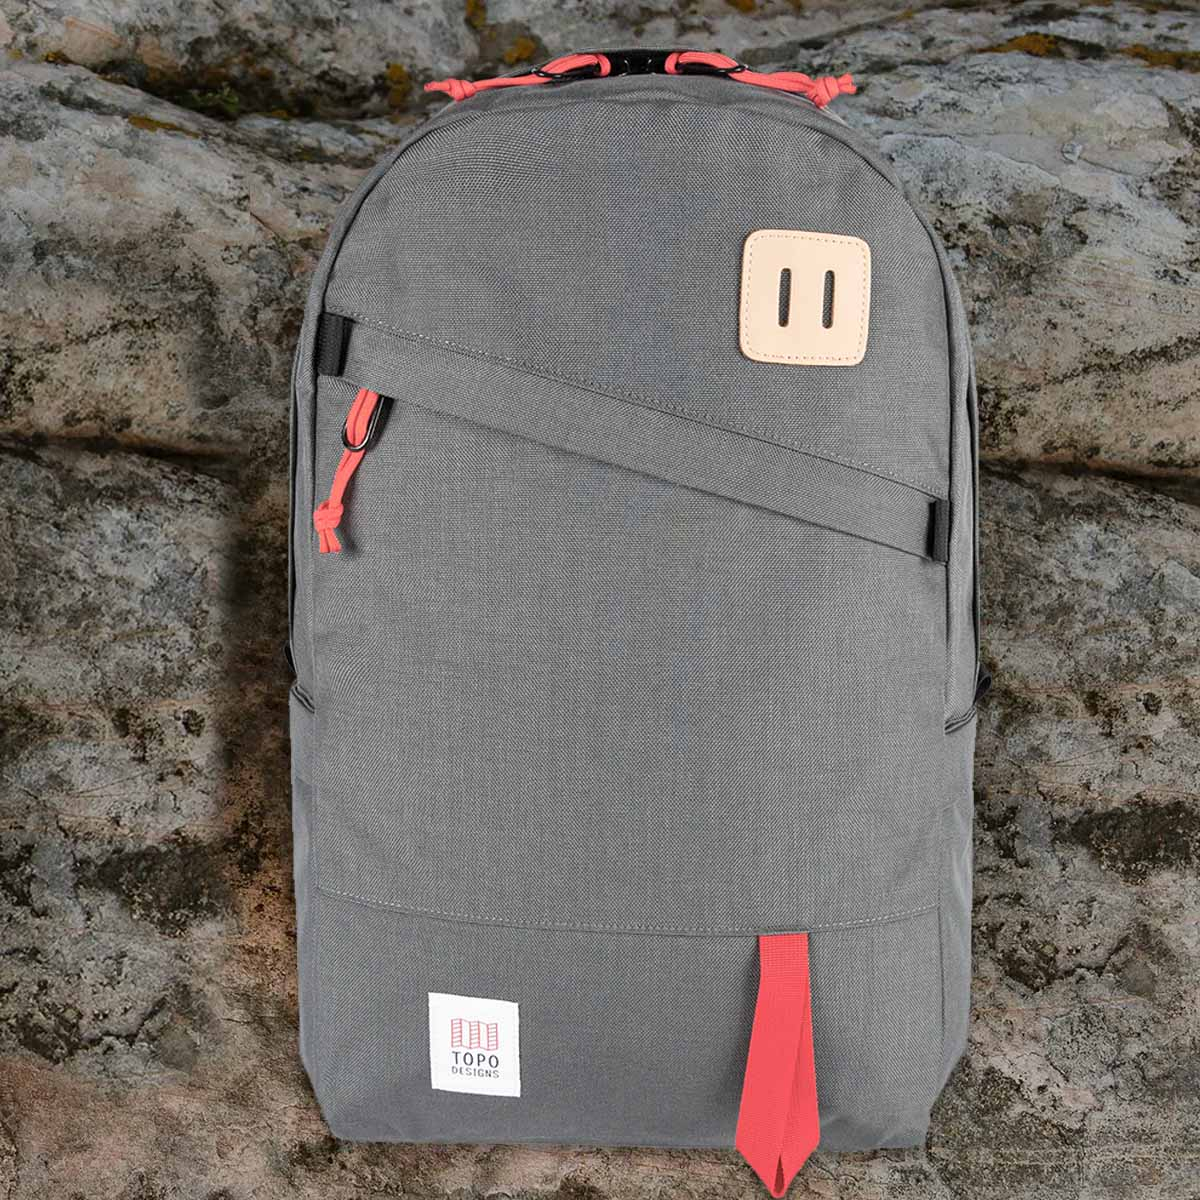 Topo Designs Daypack Classic Charcoal, starker Rucksack in 1000D Nylon mit 15 Zoll Laptopfach und 21.6 Liter Stauraum